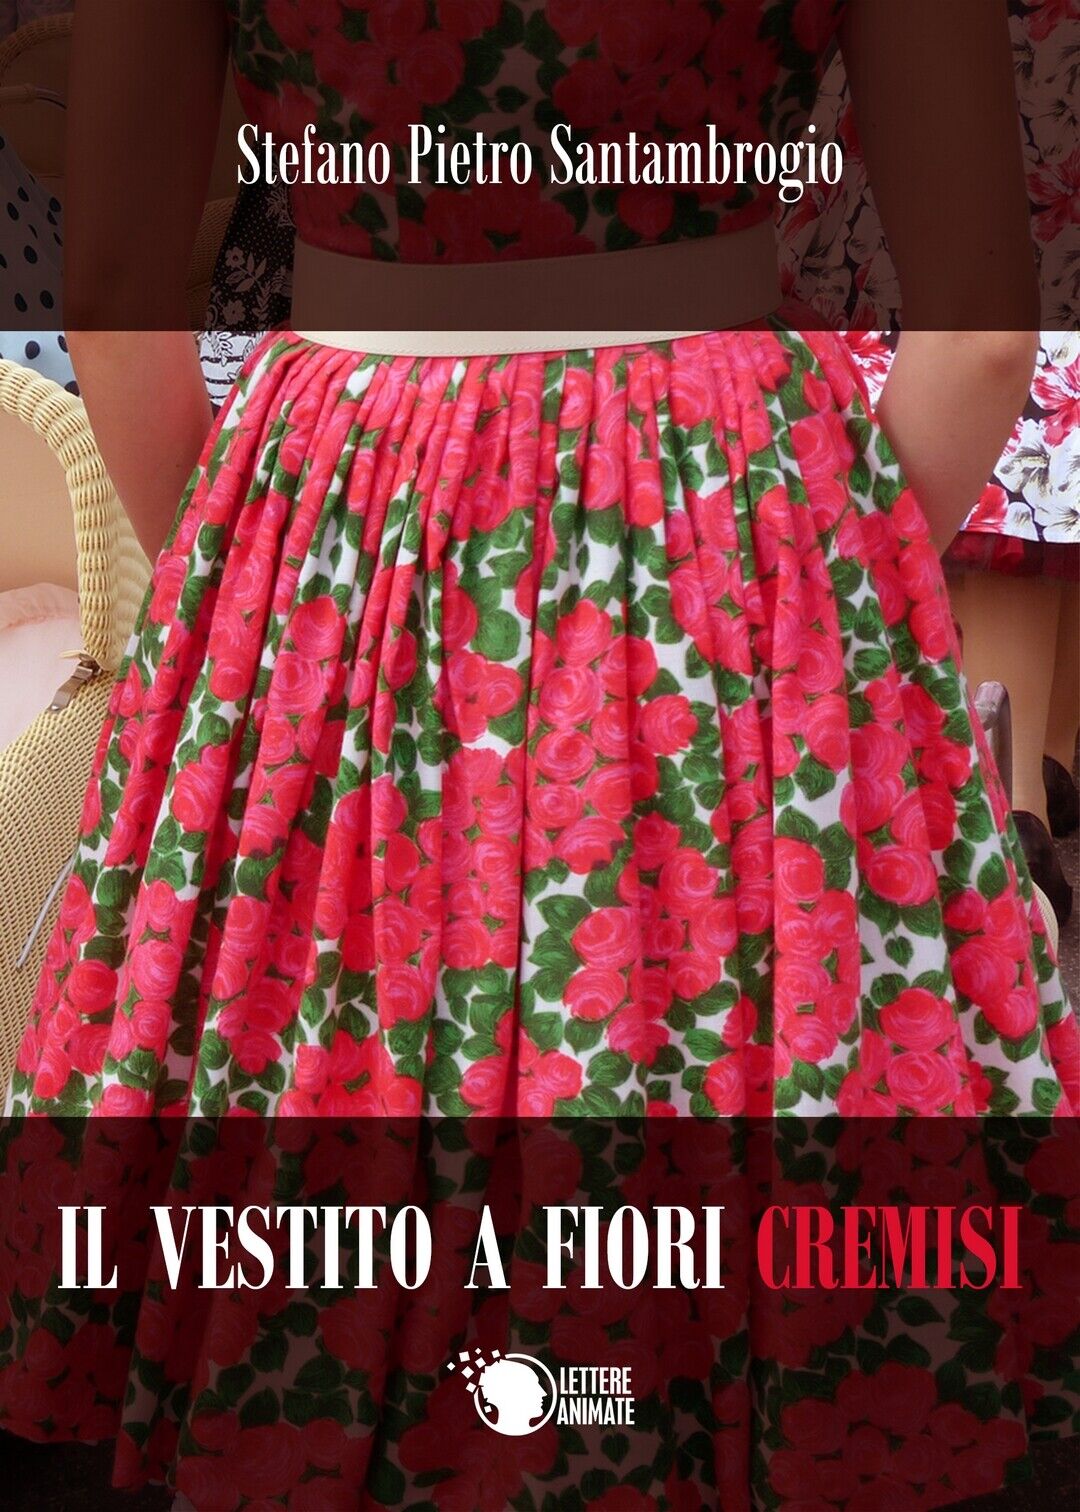 Il vestito a fiori cremisi  di Stefano Pietro Santambrogio,  2017,  Lettere An.